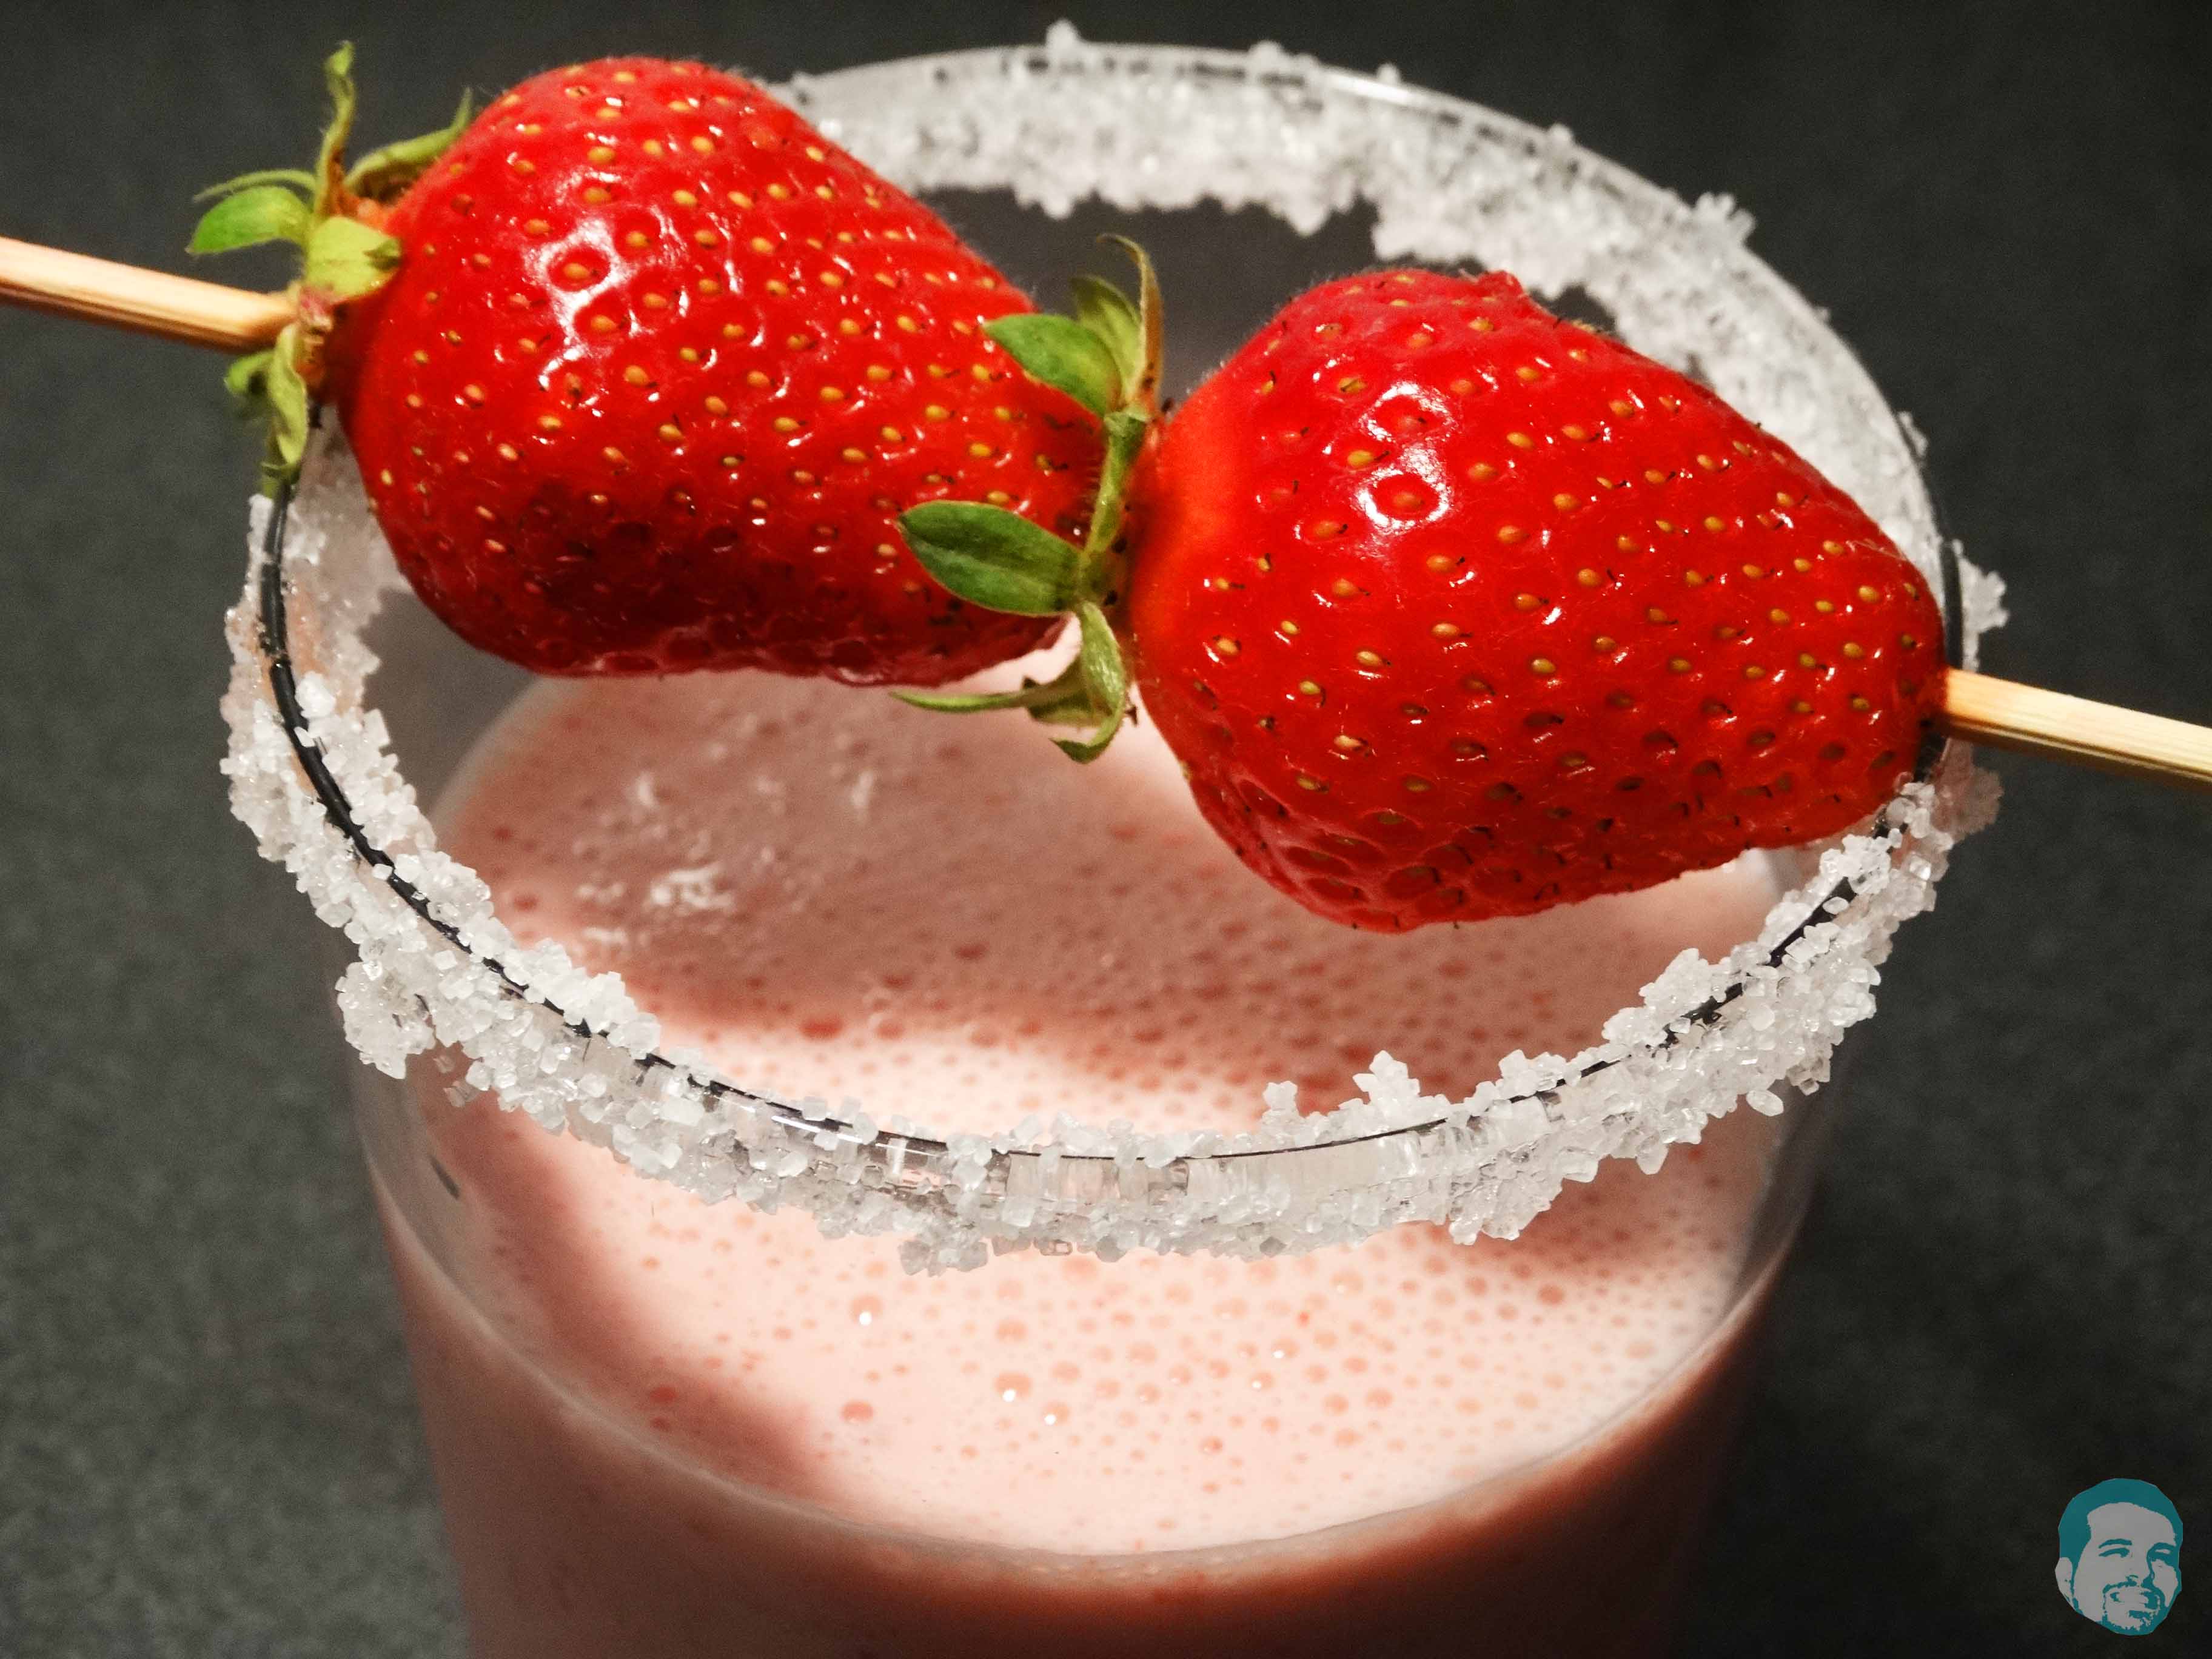 Frozen Joghurt Erdbeer Shake - Haunis Food Blog